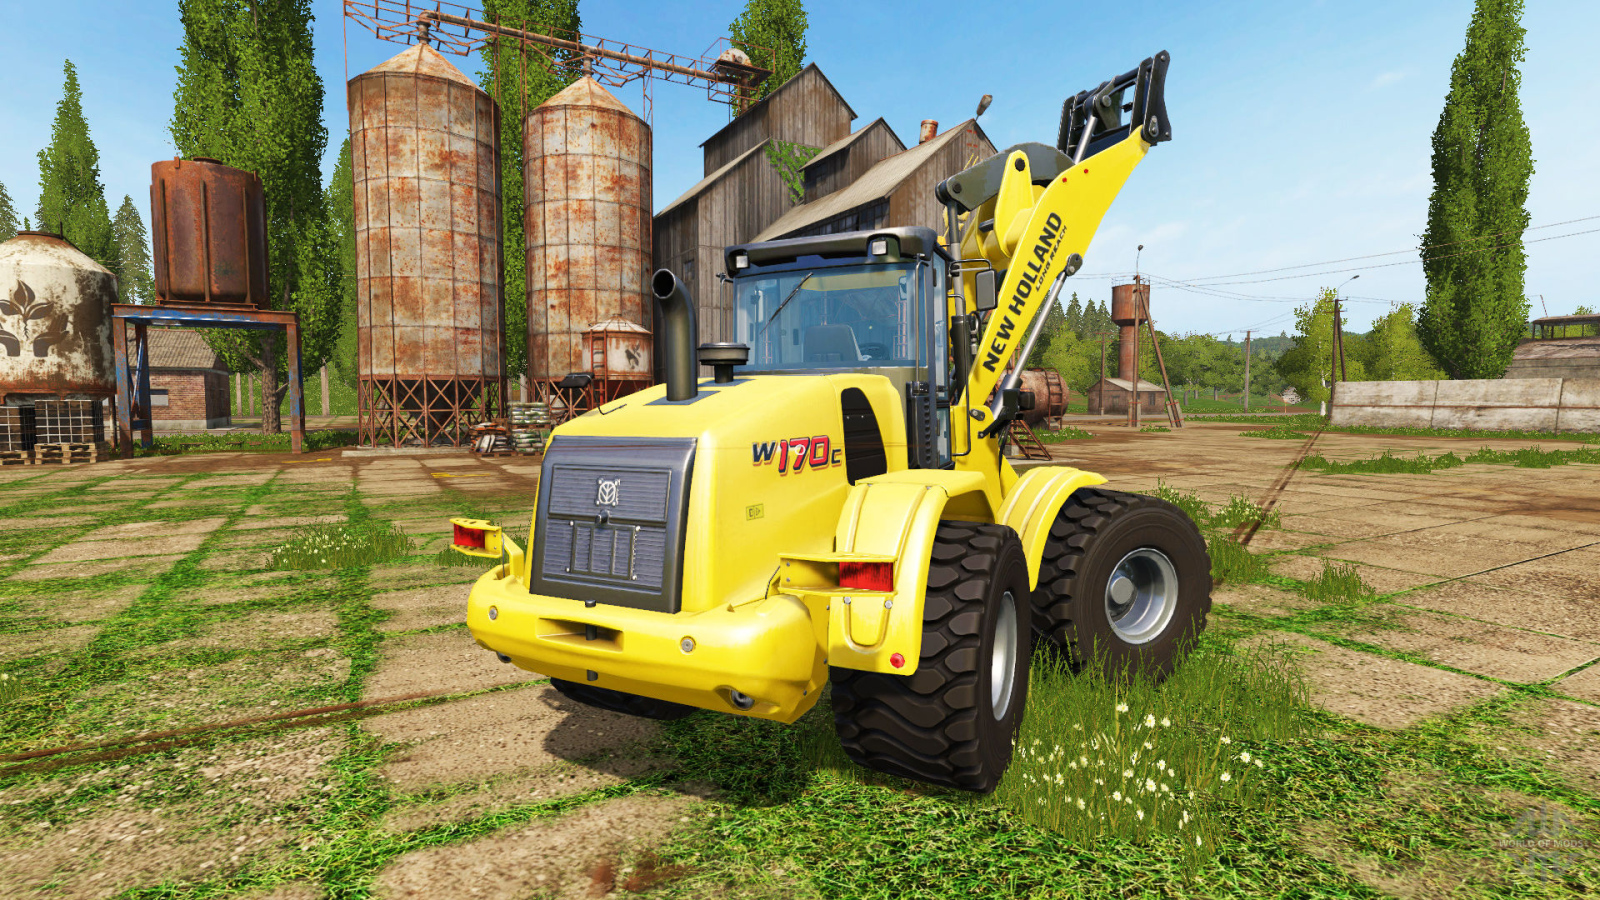 Колёсный фронтальный погрузчик New Holland W170C для видеоигры Farming Simulator 17